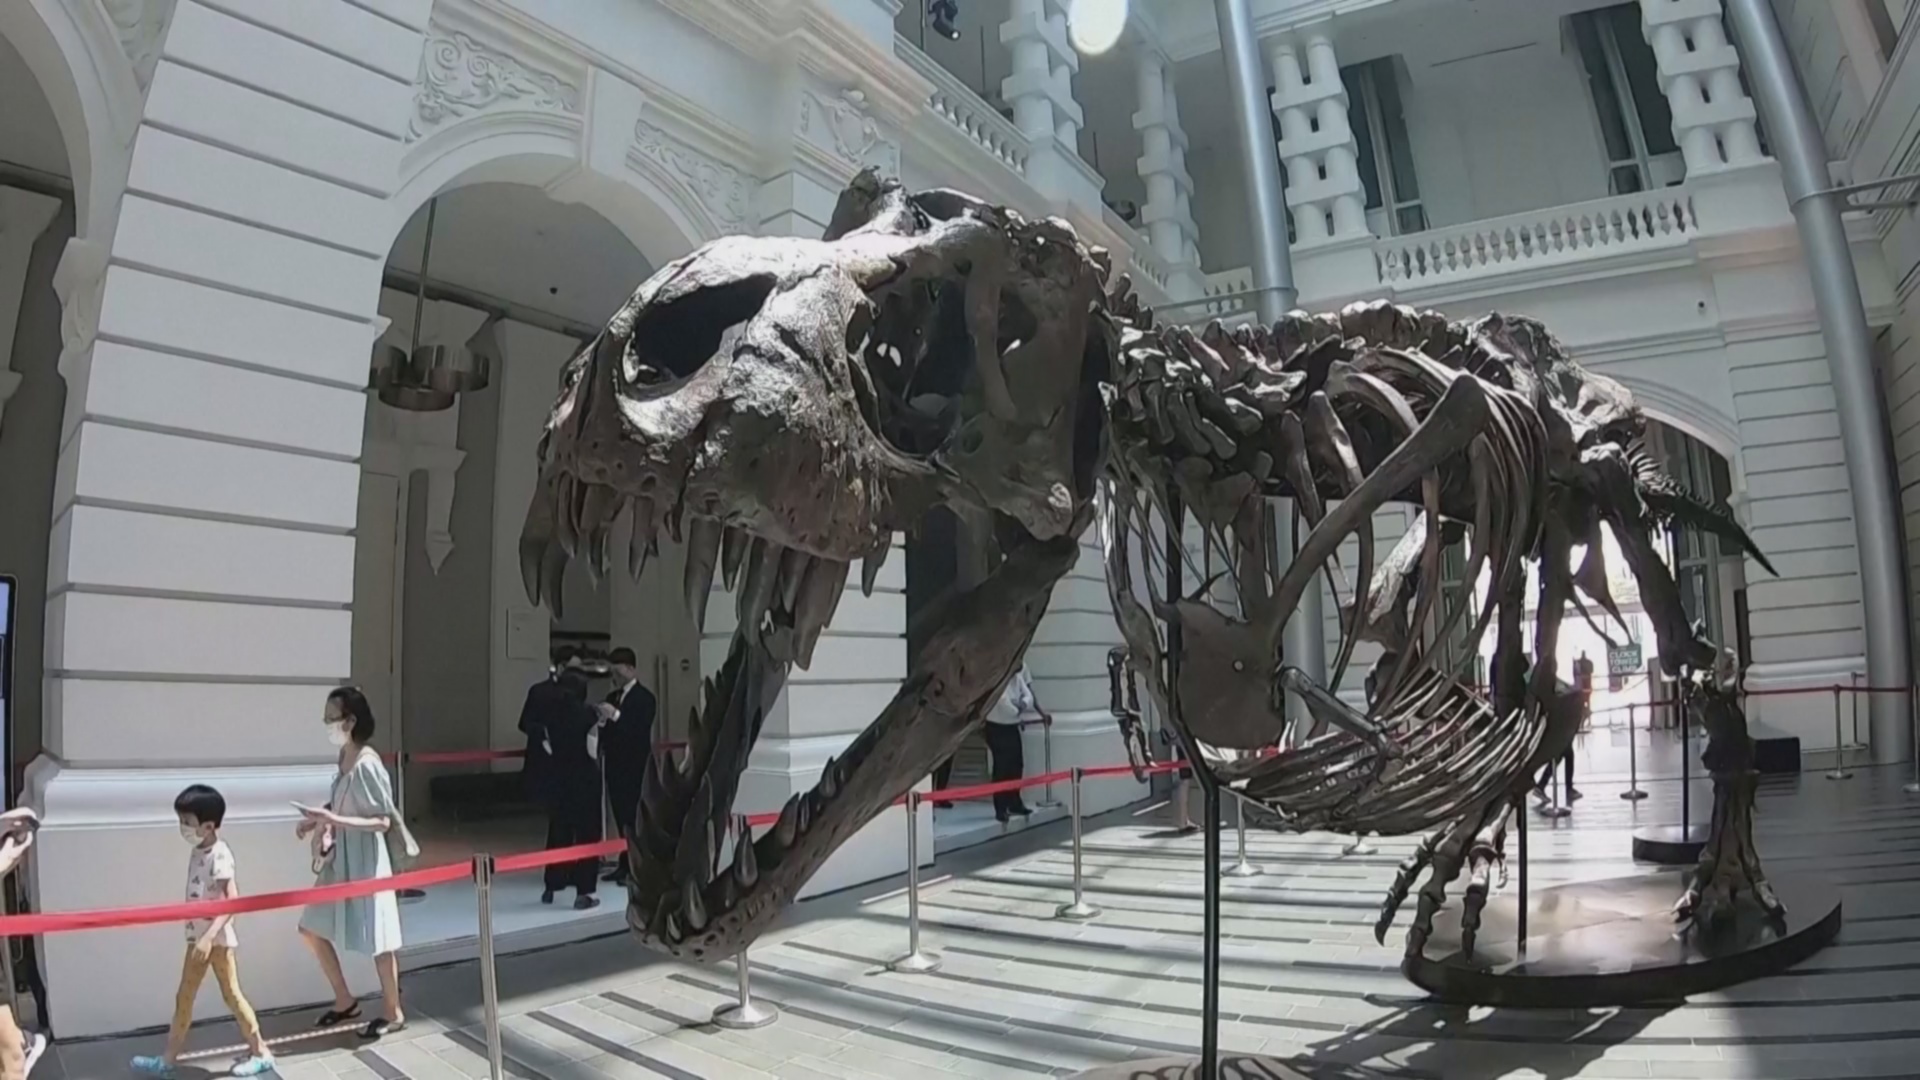 В Азии впервые уйдёт с молотка редкий скелет тираннозавра